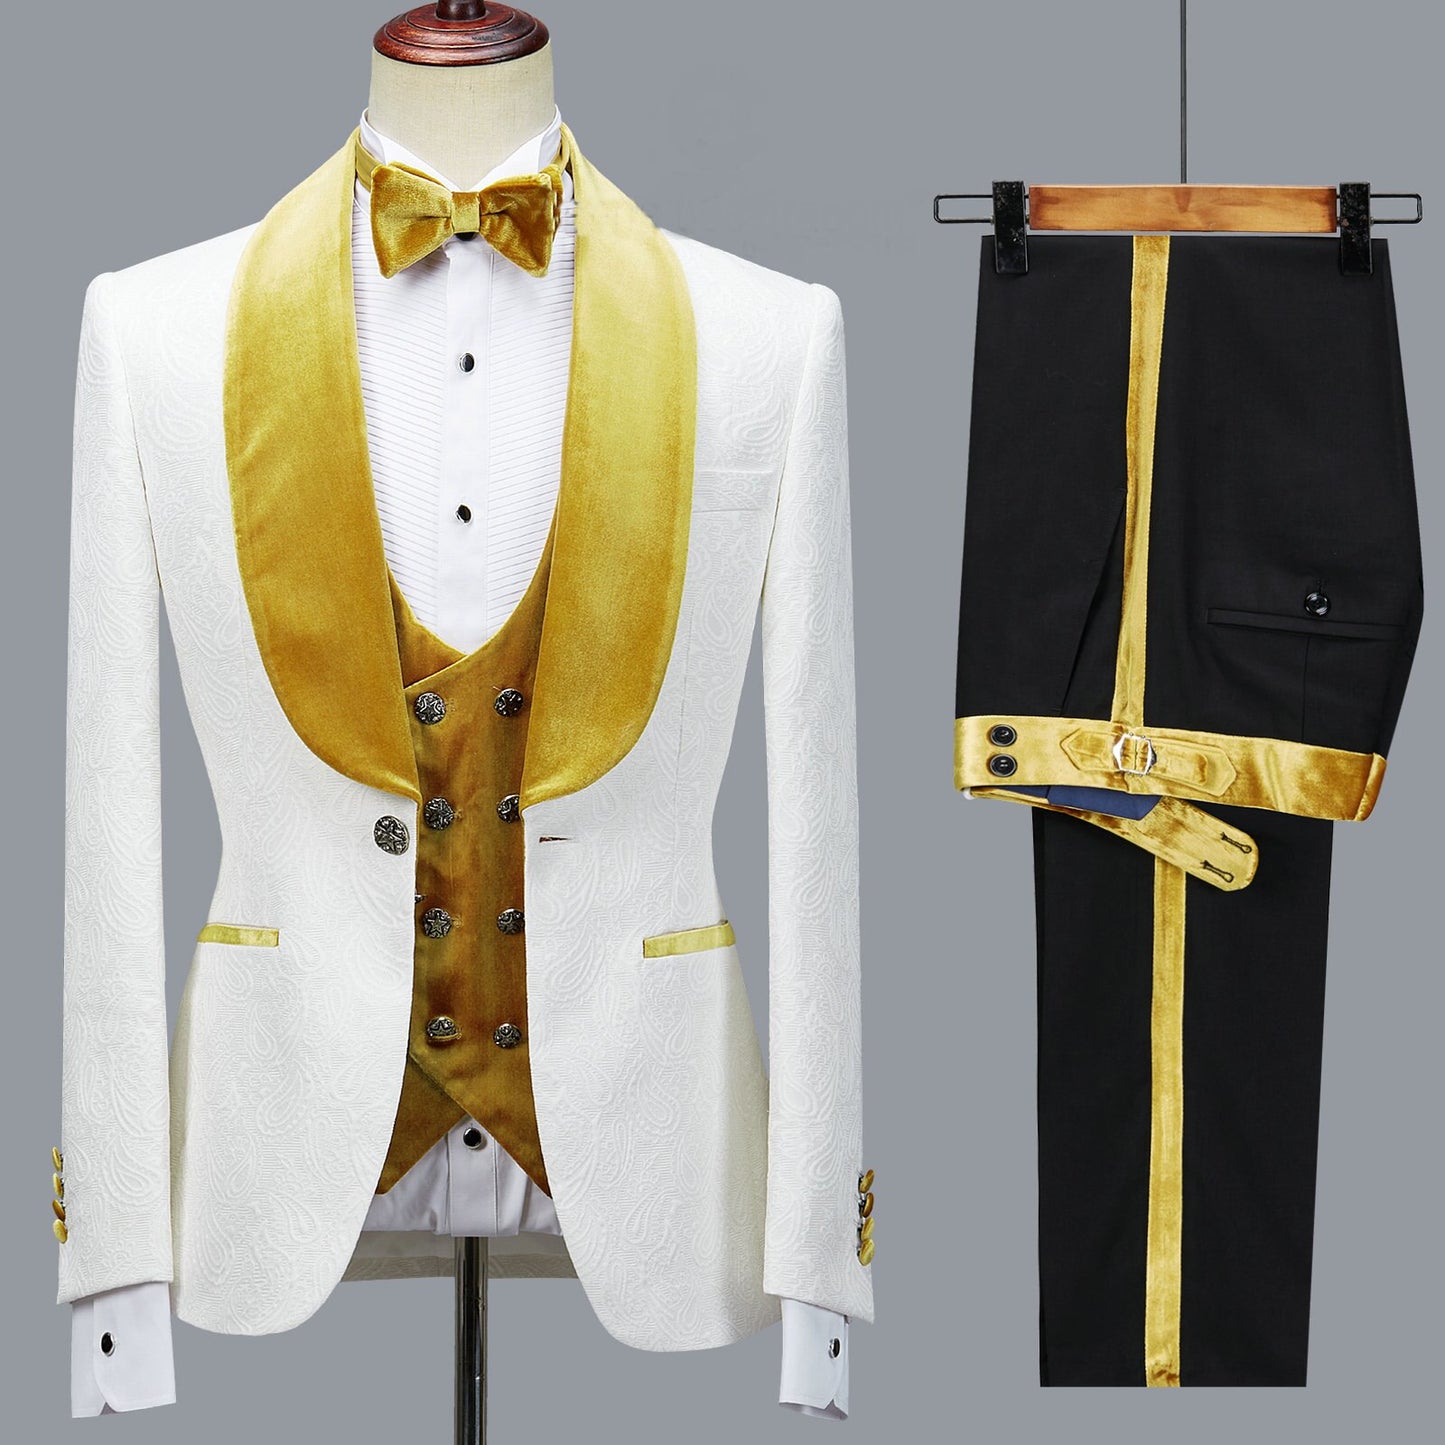 Floral Jacket Men Suit Slim Fit Wedding Tuxedo Navy Blue Velvet Lapel Groom Party Suits Costume Homme Best Man Blazer